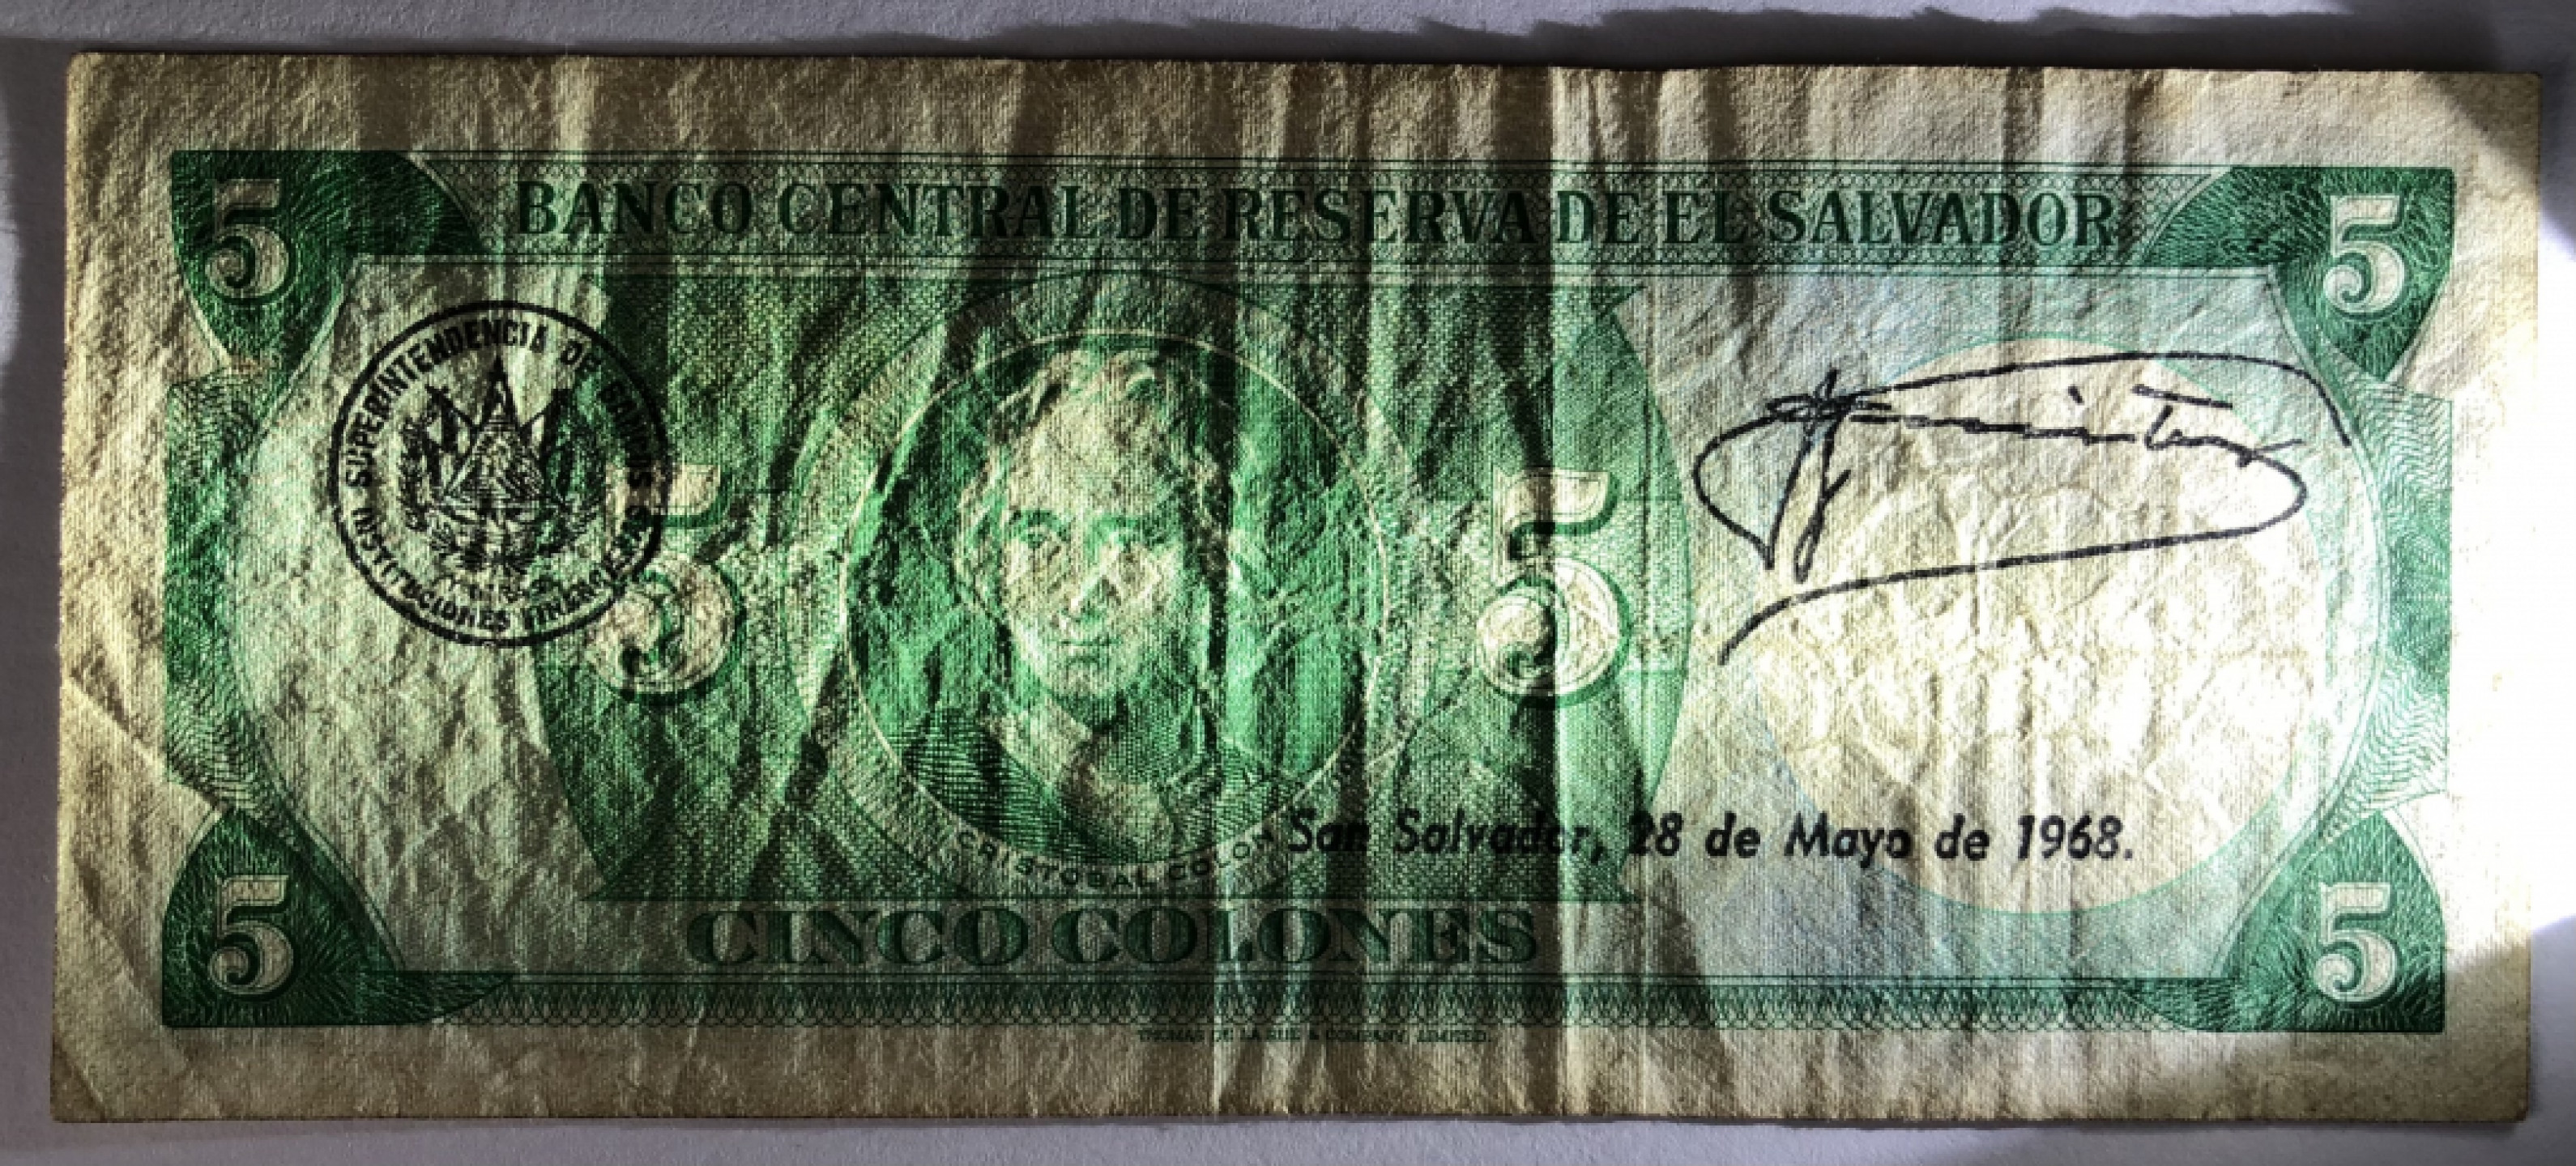 罕见 萨尔瓦多1967年版“坎纳斯神父诞辰200周年”5科郎纪念钞 旧品如图